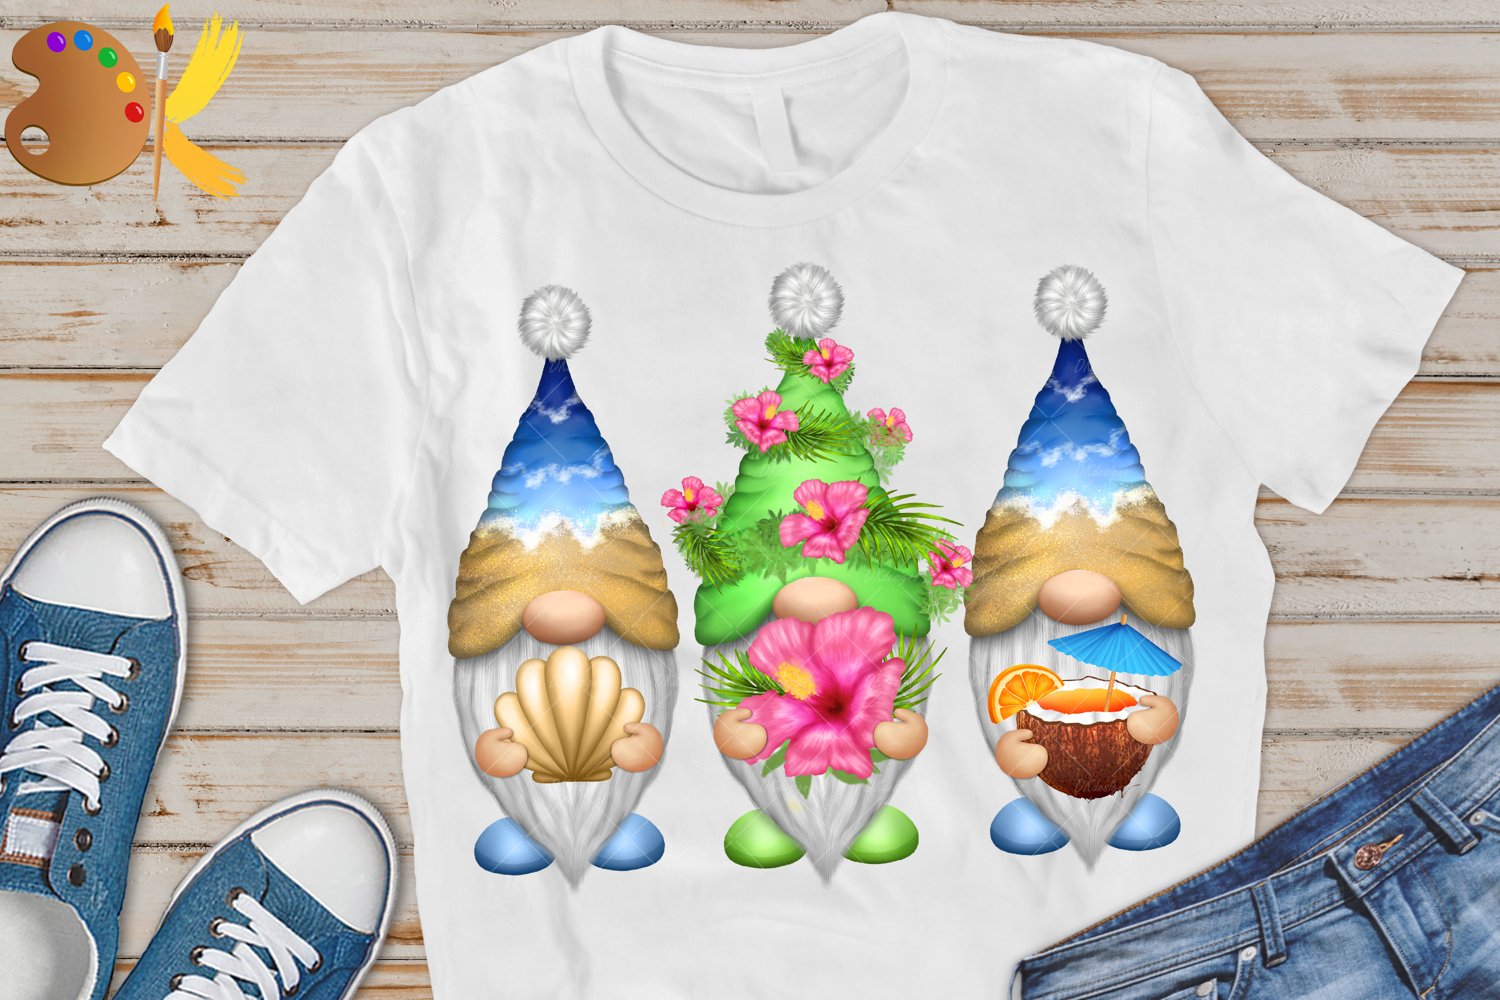 Sea gnomes - t-shirt.